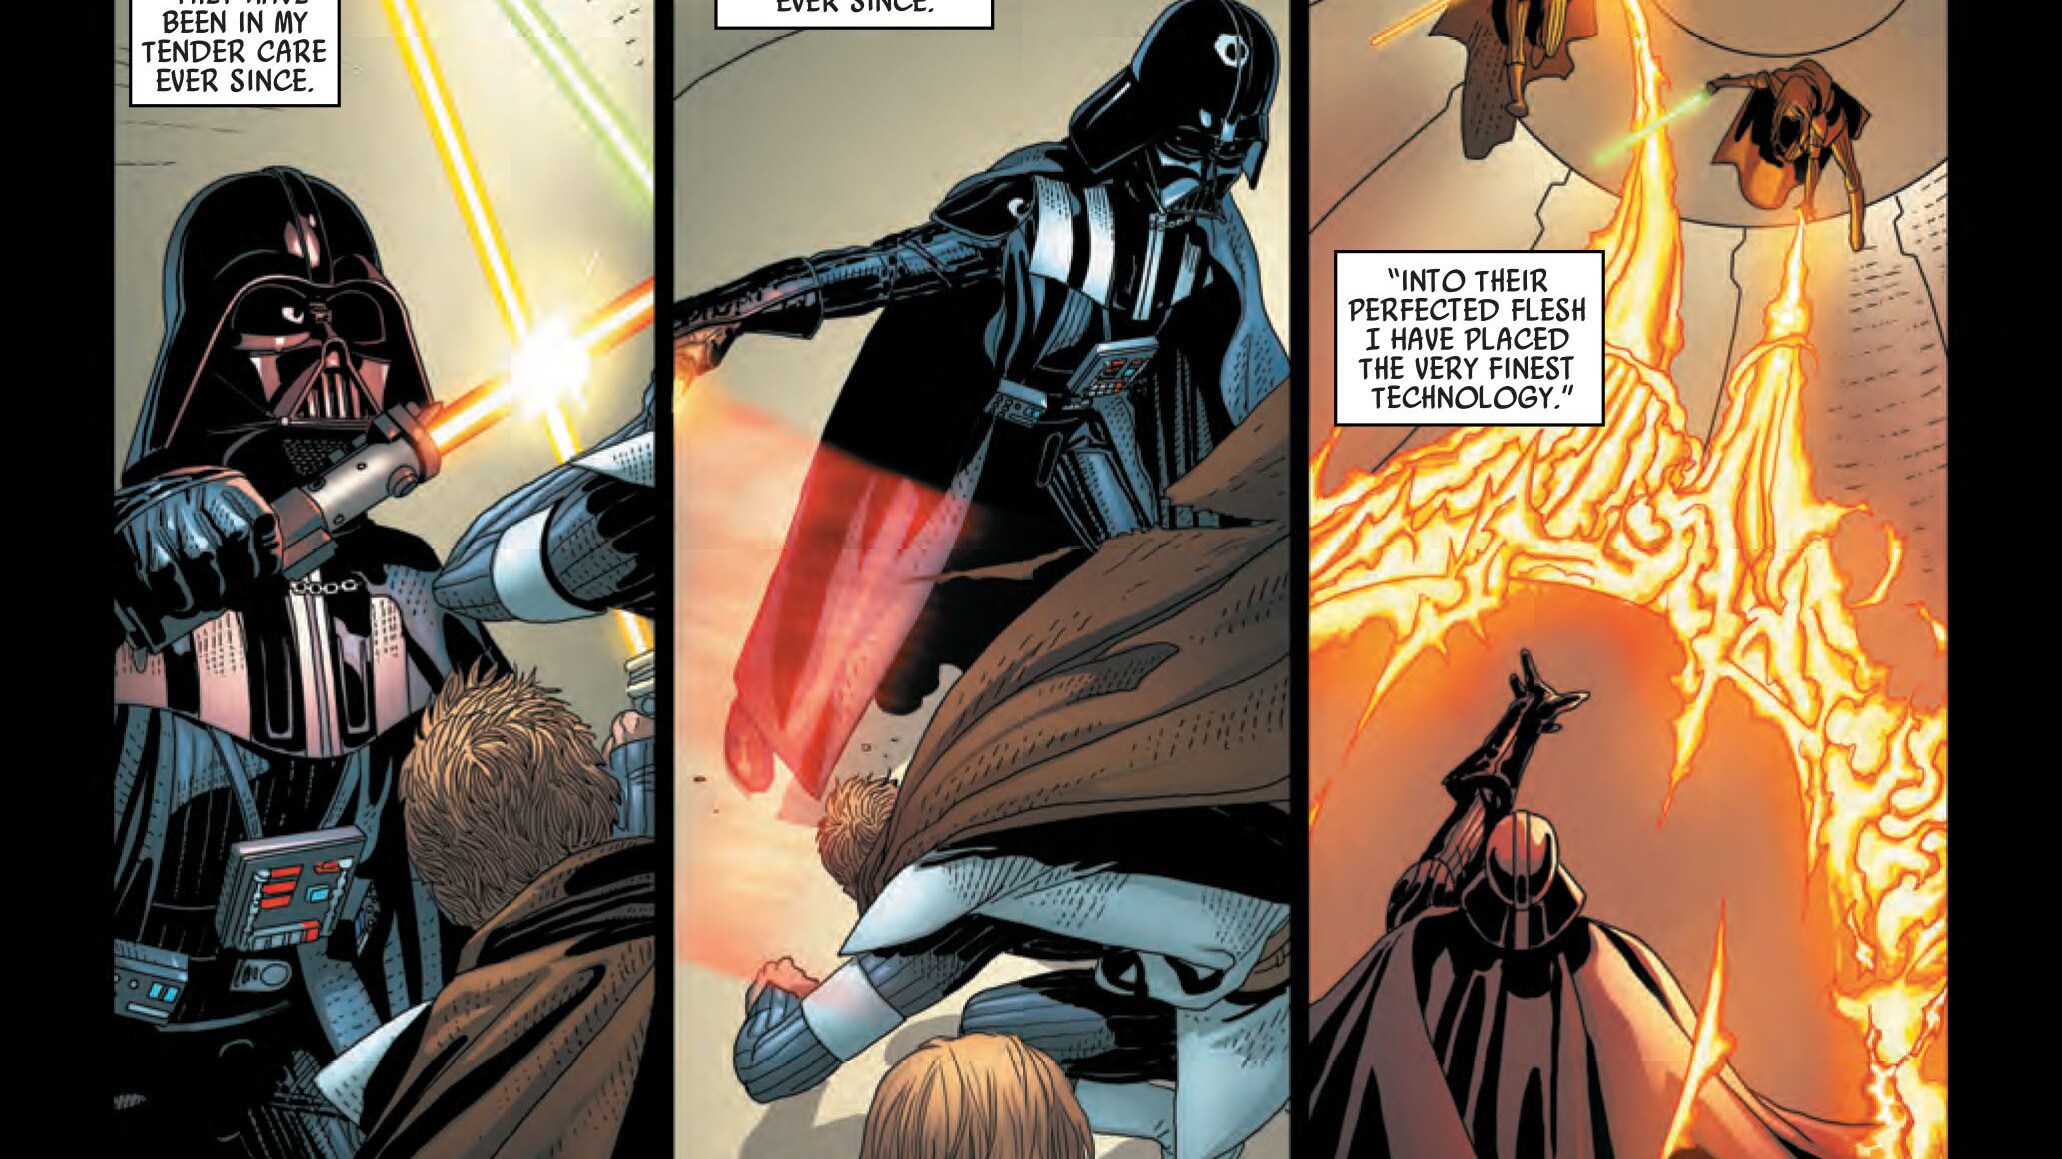 Darth Vader #6 - Vader in battle